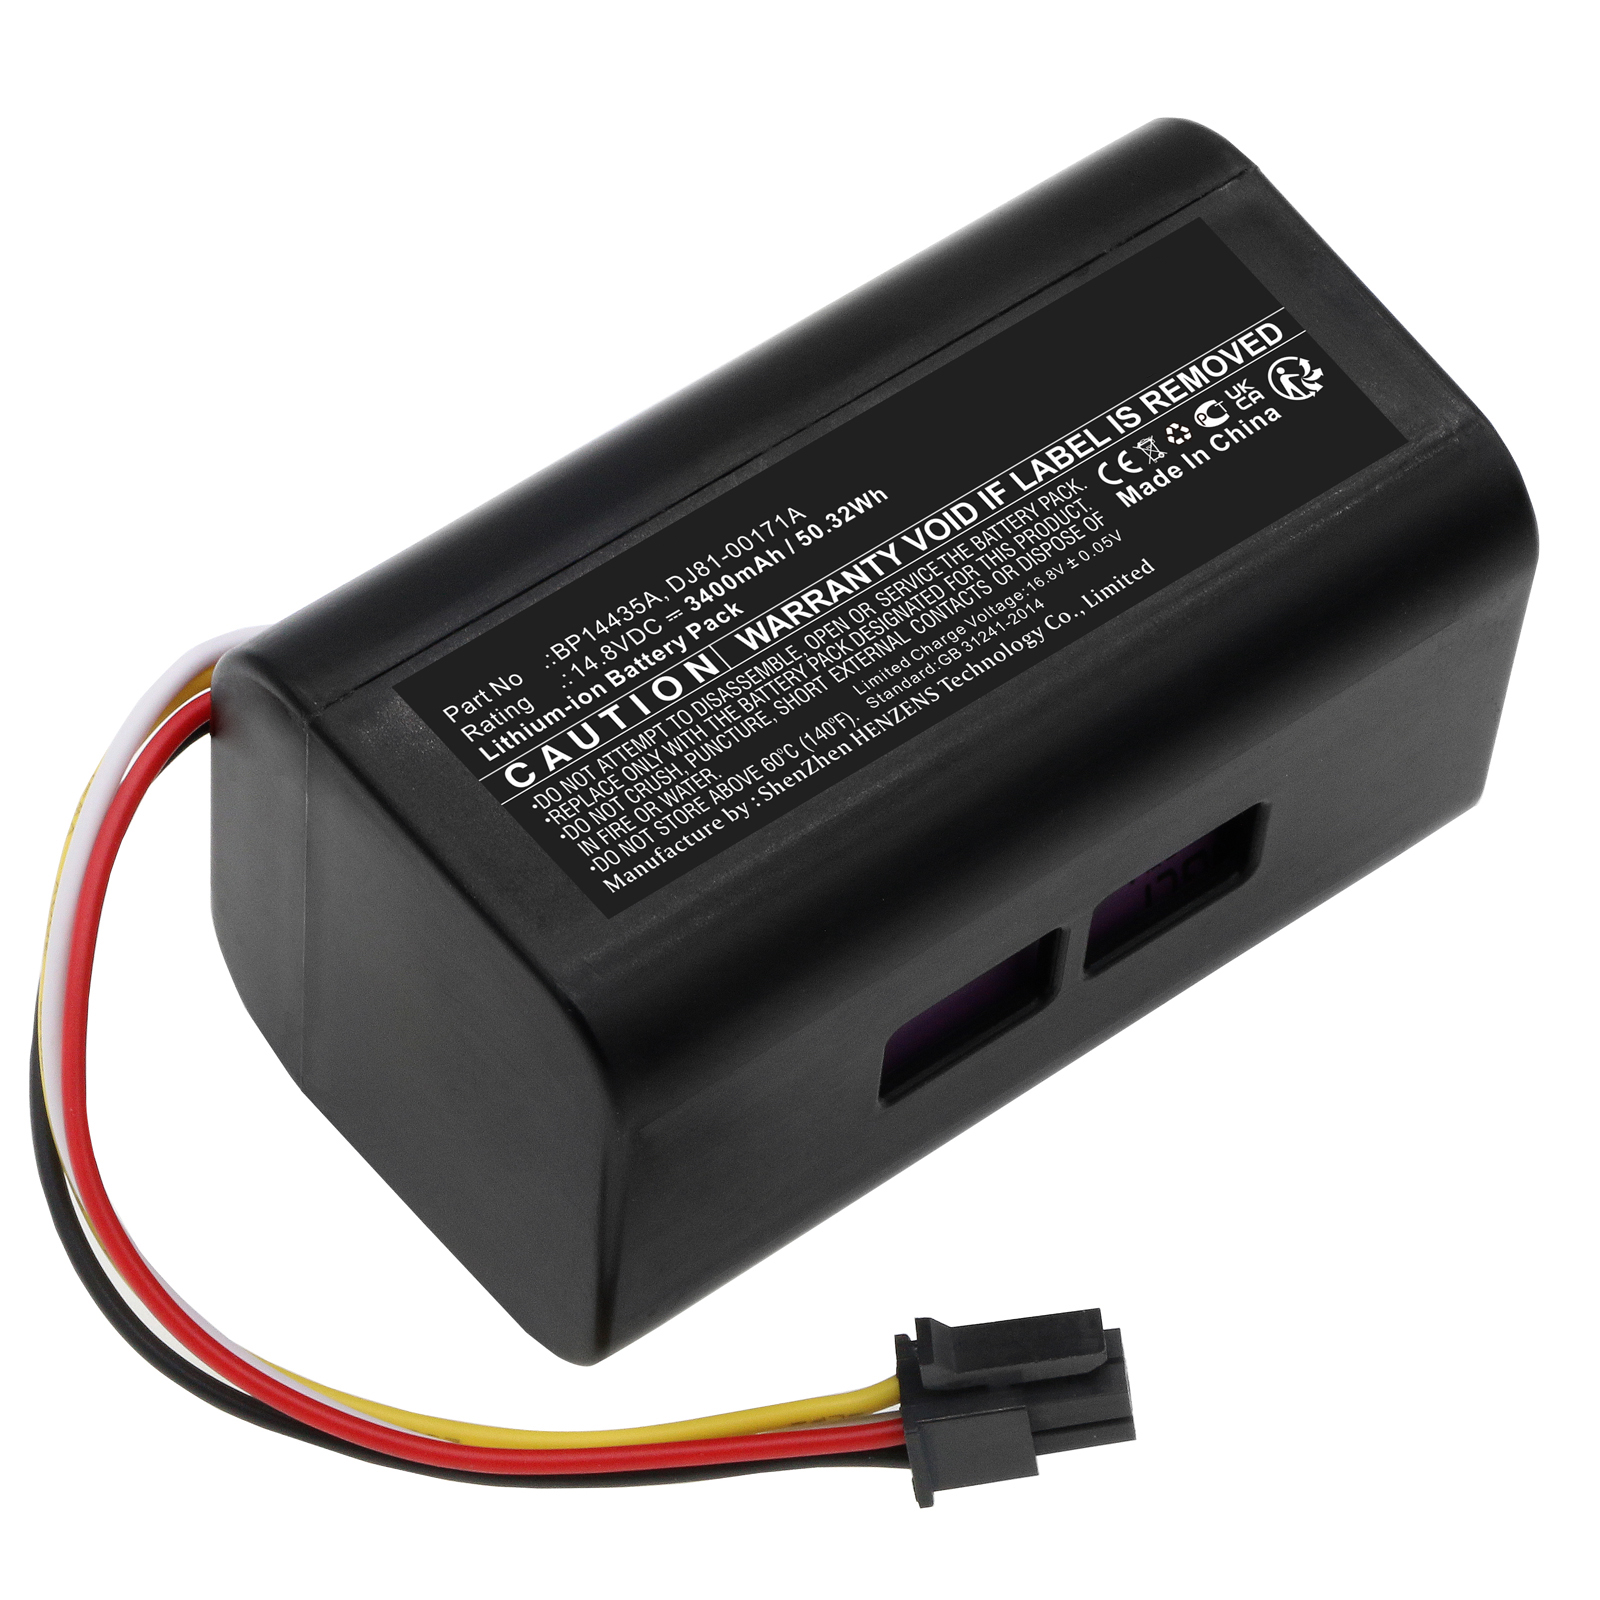 Synergy Digital Vacuum Cleaner Battery, Compatible with Samsung BP14435A Vacuum Cleaner Battery (Li-ion, 14.8V, 3400mAh)